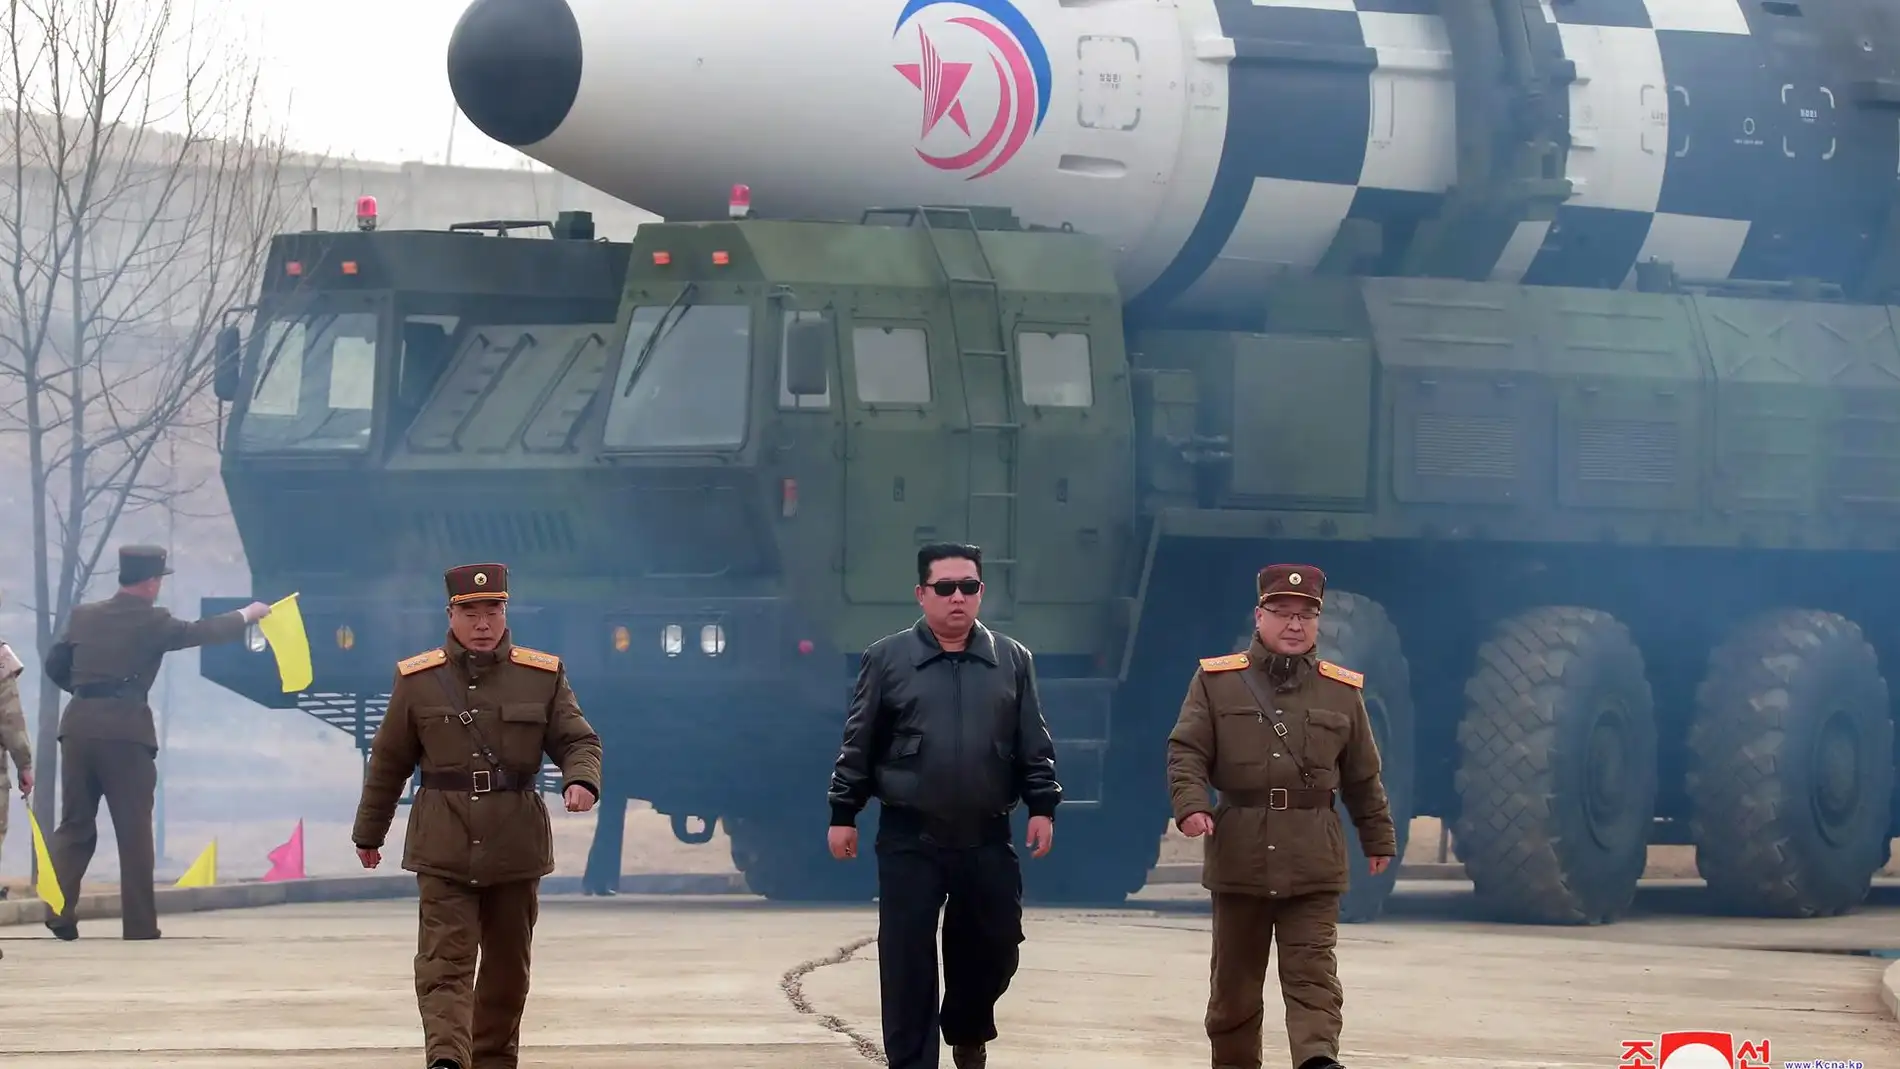 El líder norcoreano, Kim Jong-Un, durante el lanzamiento de prueba del misil. 